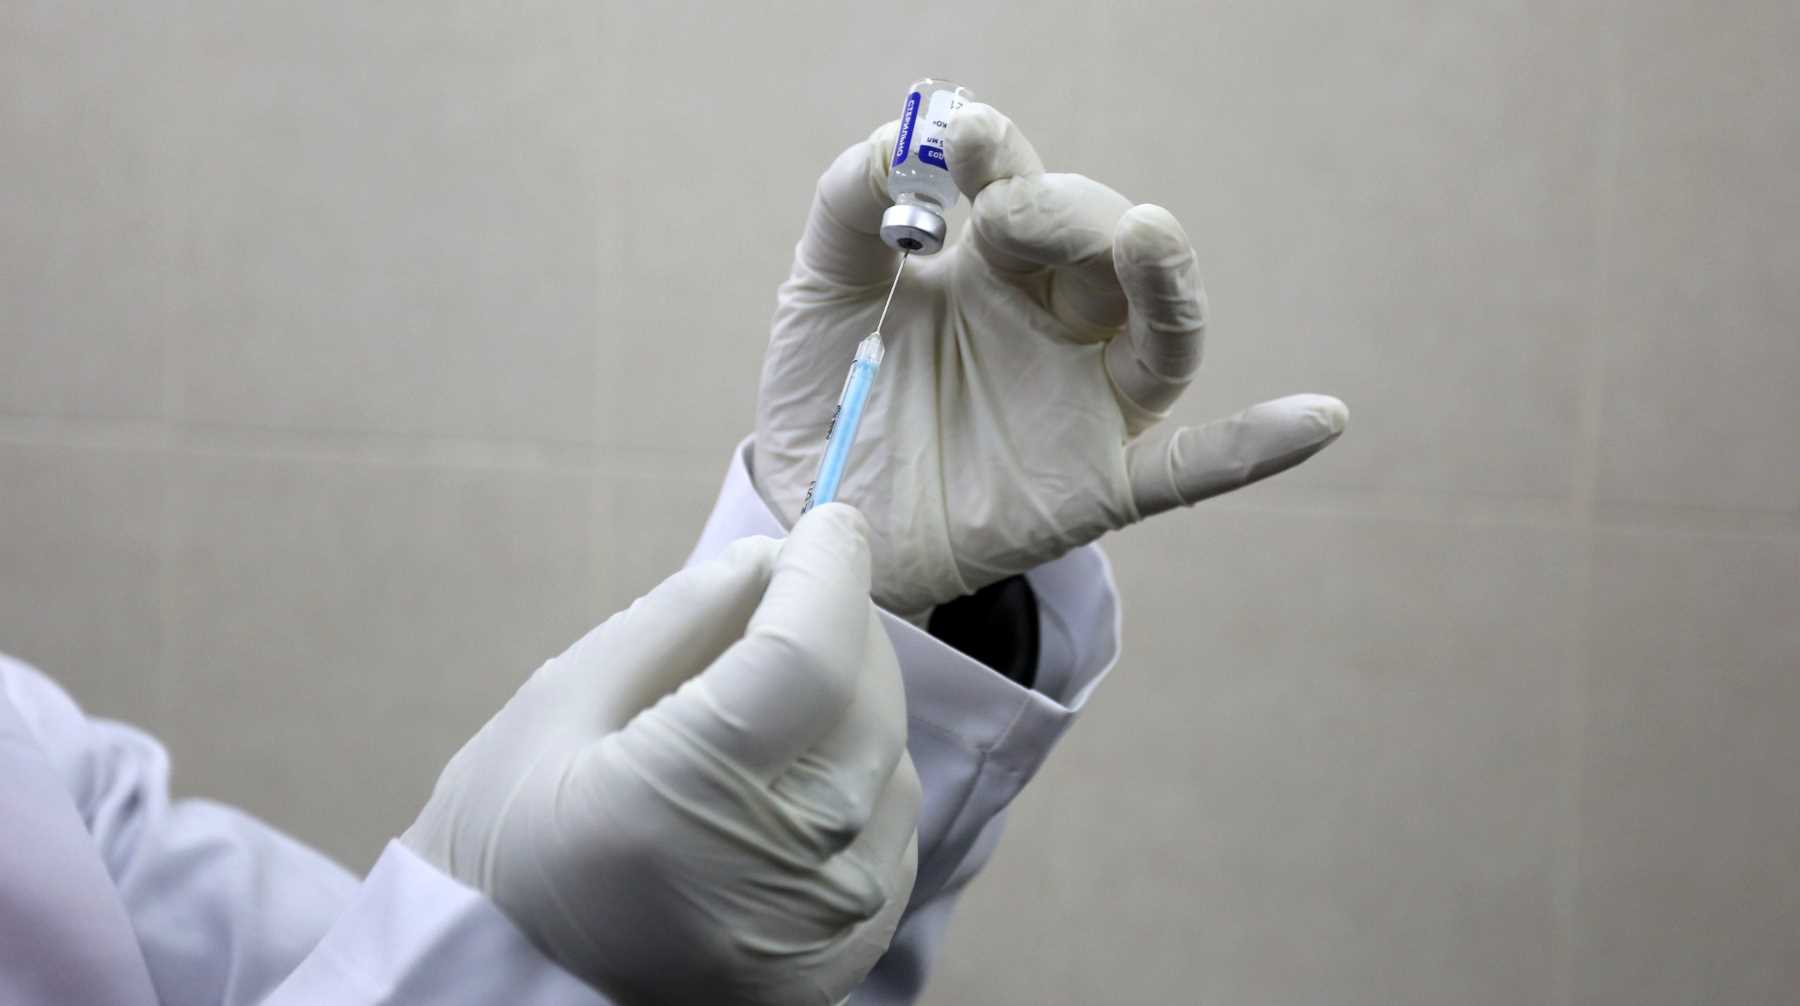 Клинические проверки начнутся летом, сообщили в агентстве Фото: © Global Look Press / Ashraf Amra